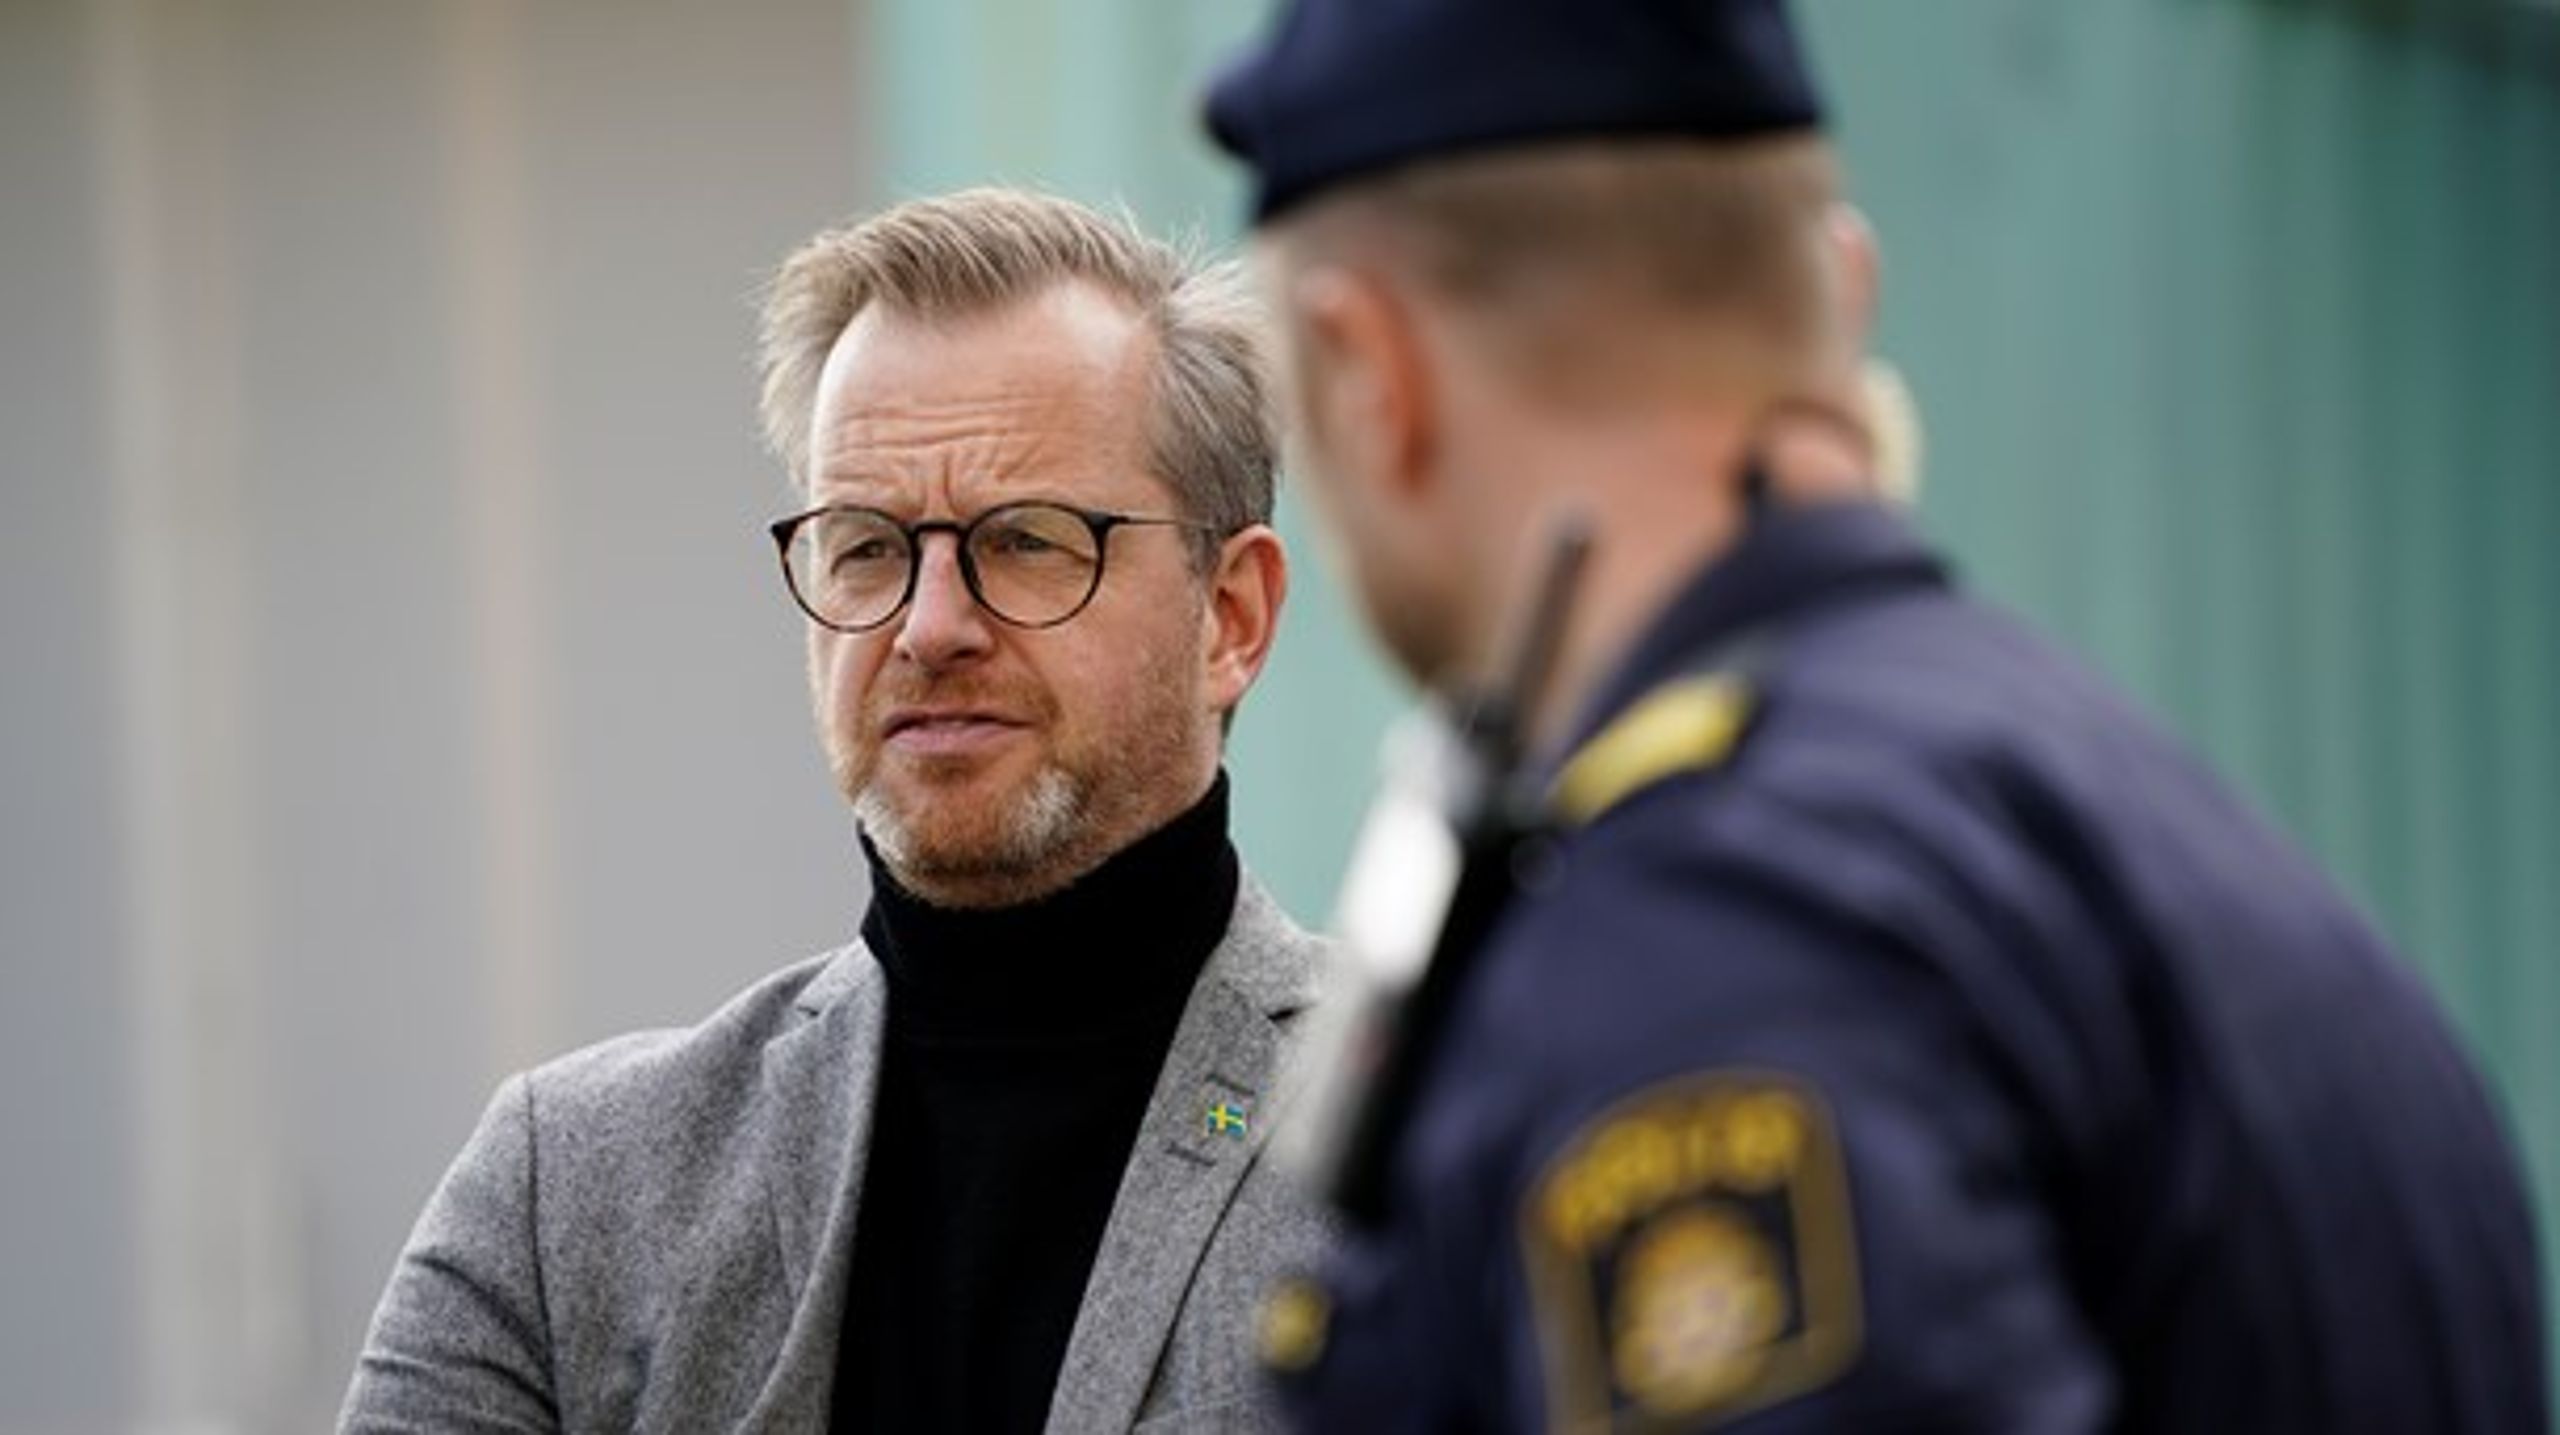 Inrikesminister Mikael Damberg vill inte att frågan om dödsskjutningarna partipolitiseras.